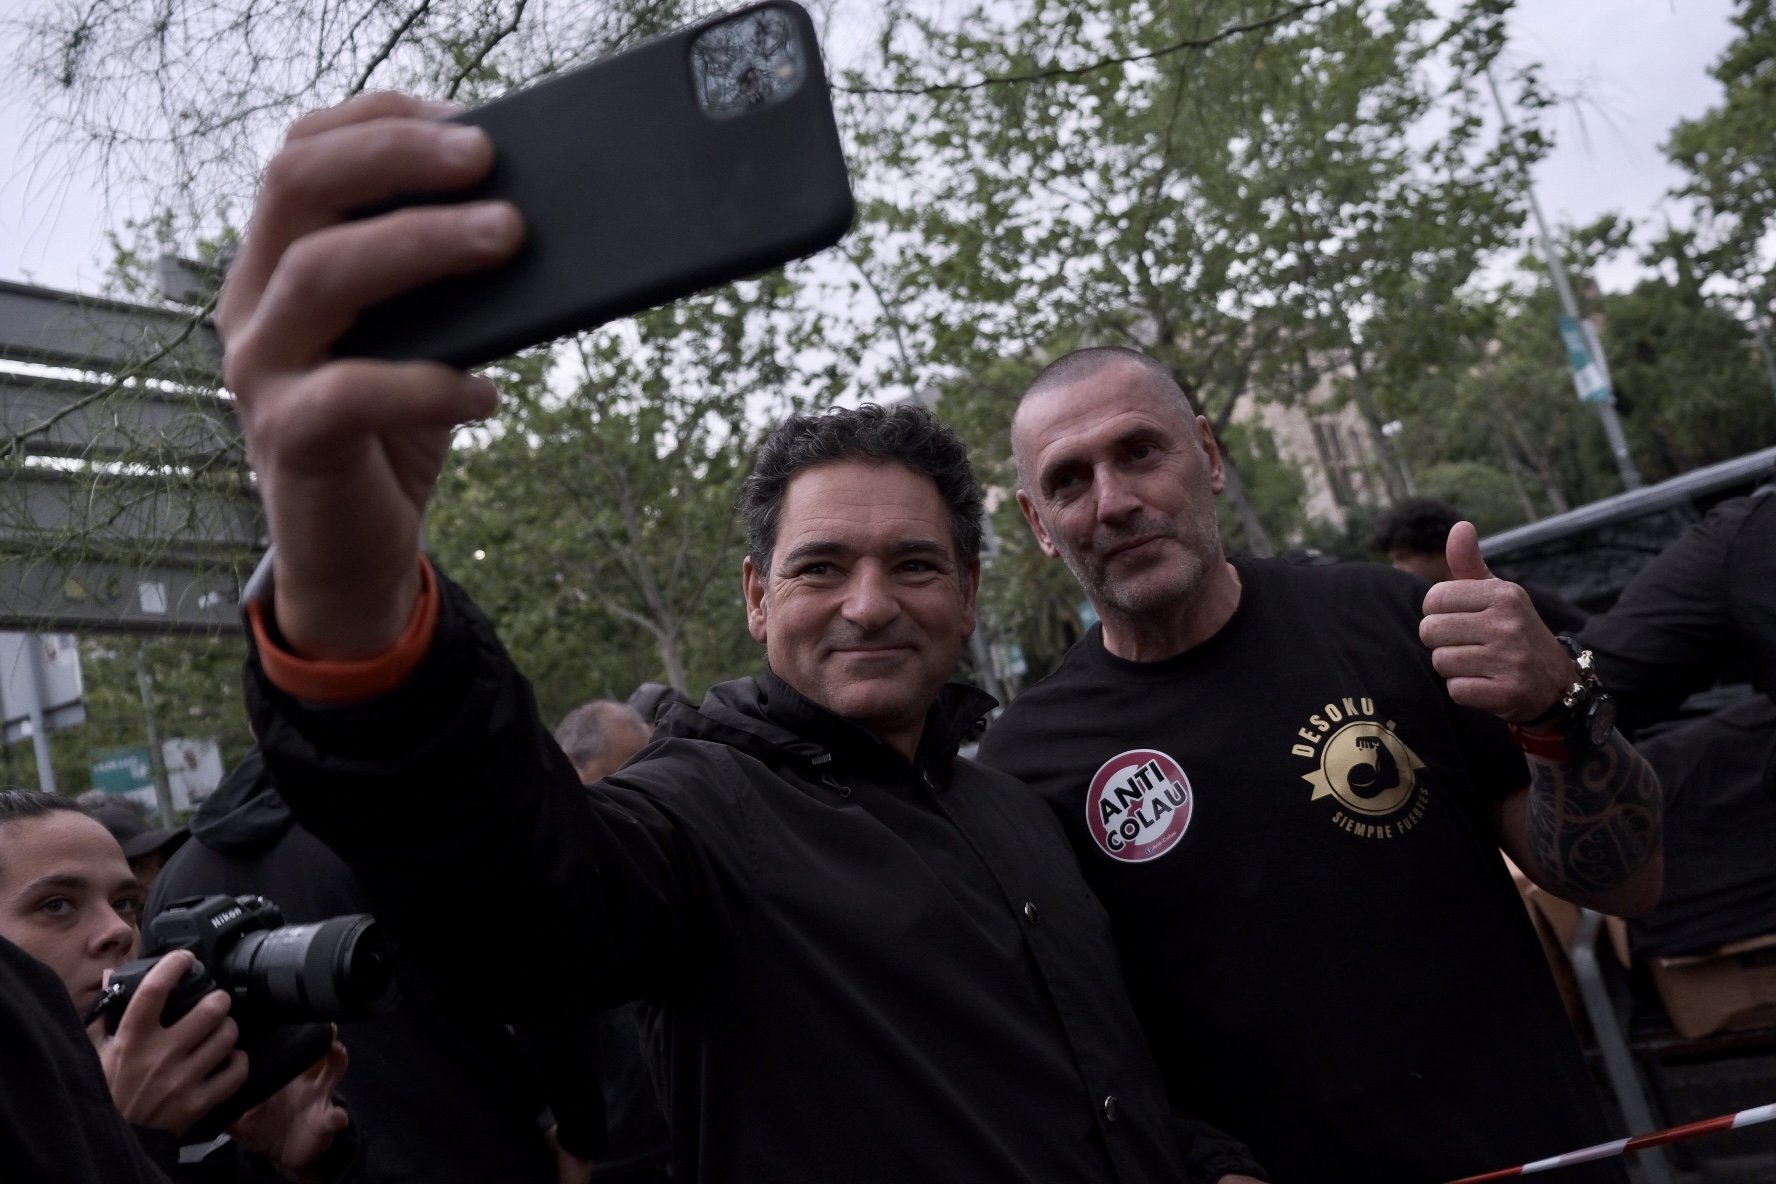 El jutge no veu delicte en els càntics neonazis a les marxes de Desokupa a Barcelona